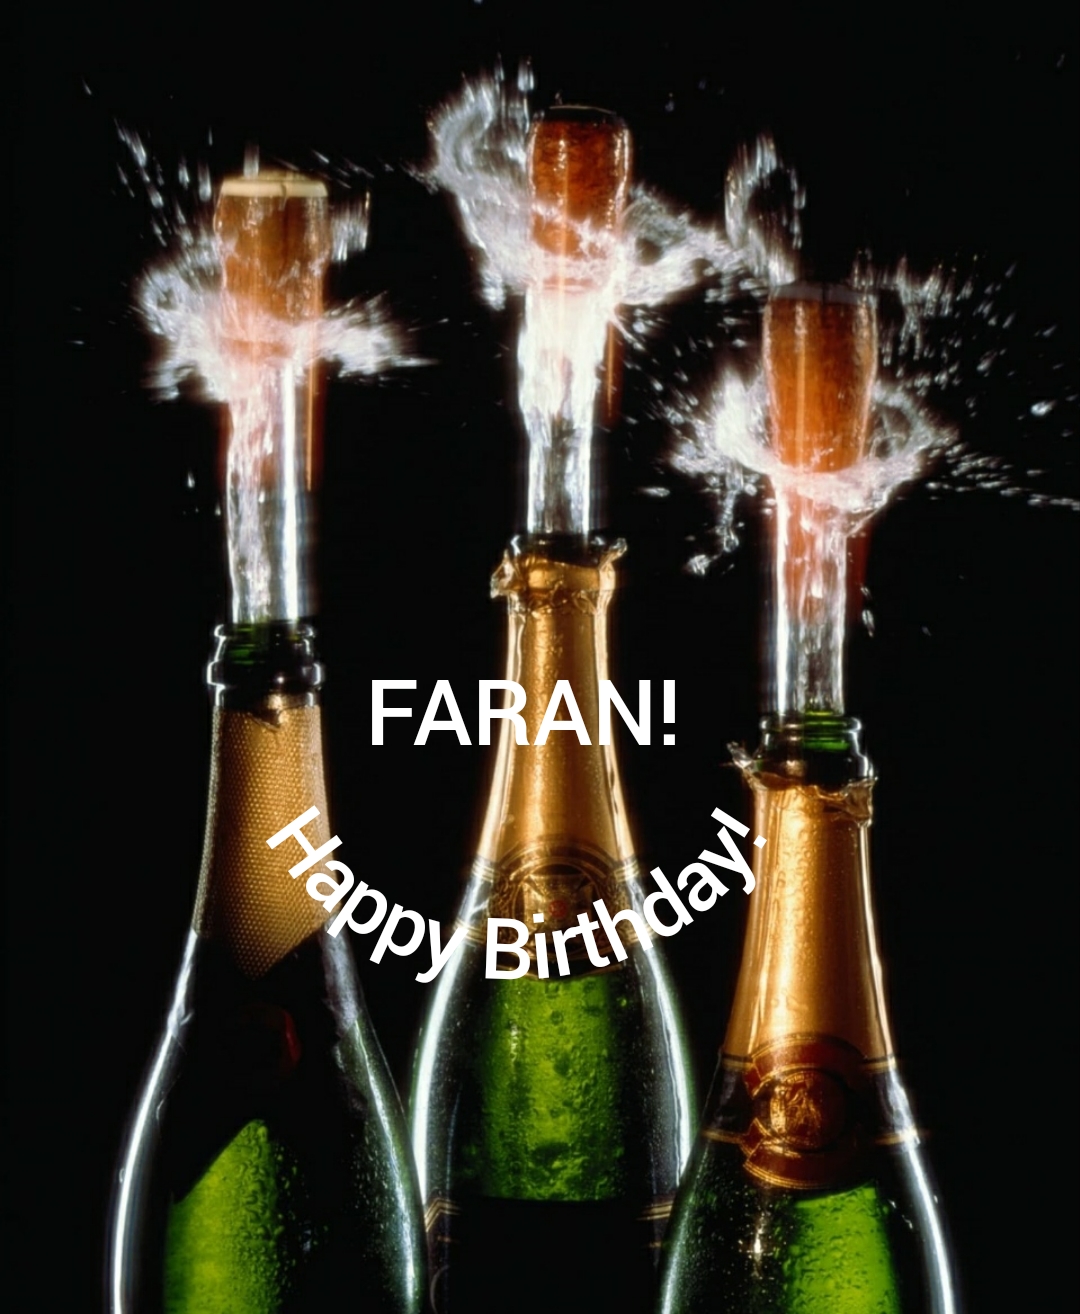 Happy birthday, Faran!